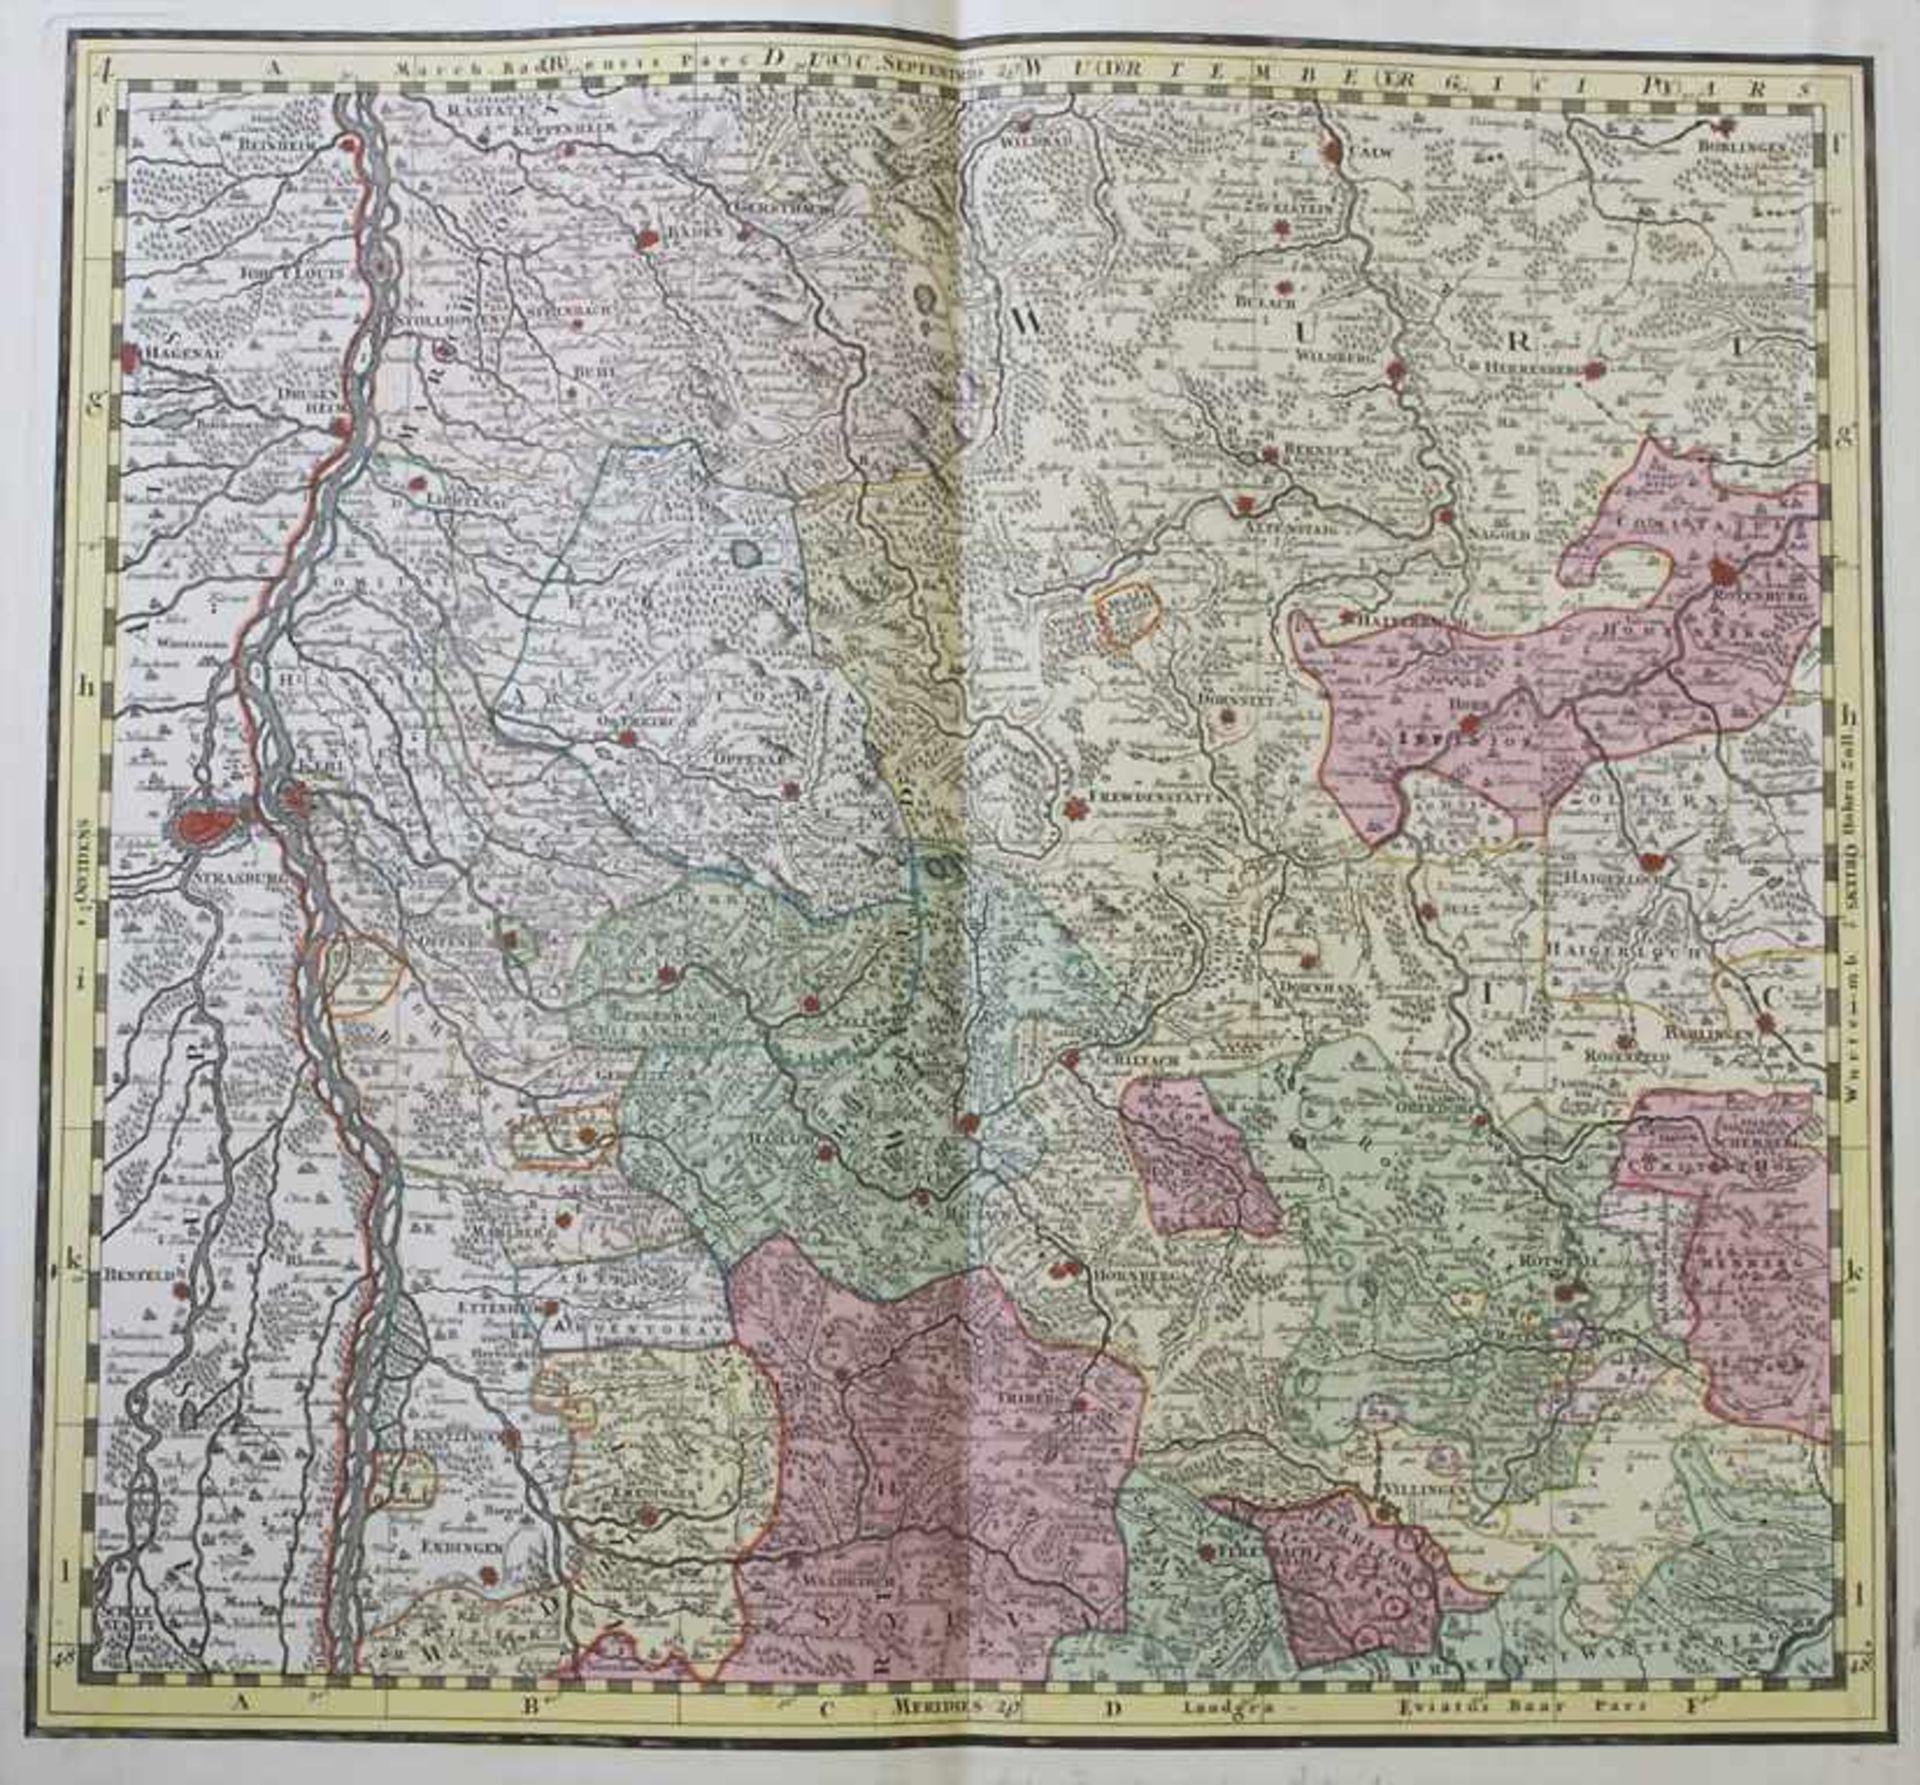 Matthias Seutter (1678-1757), Historische Karte 'Elsaß, Baden, Württemberg, Hohenzollern' / A